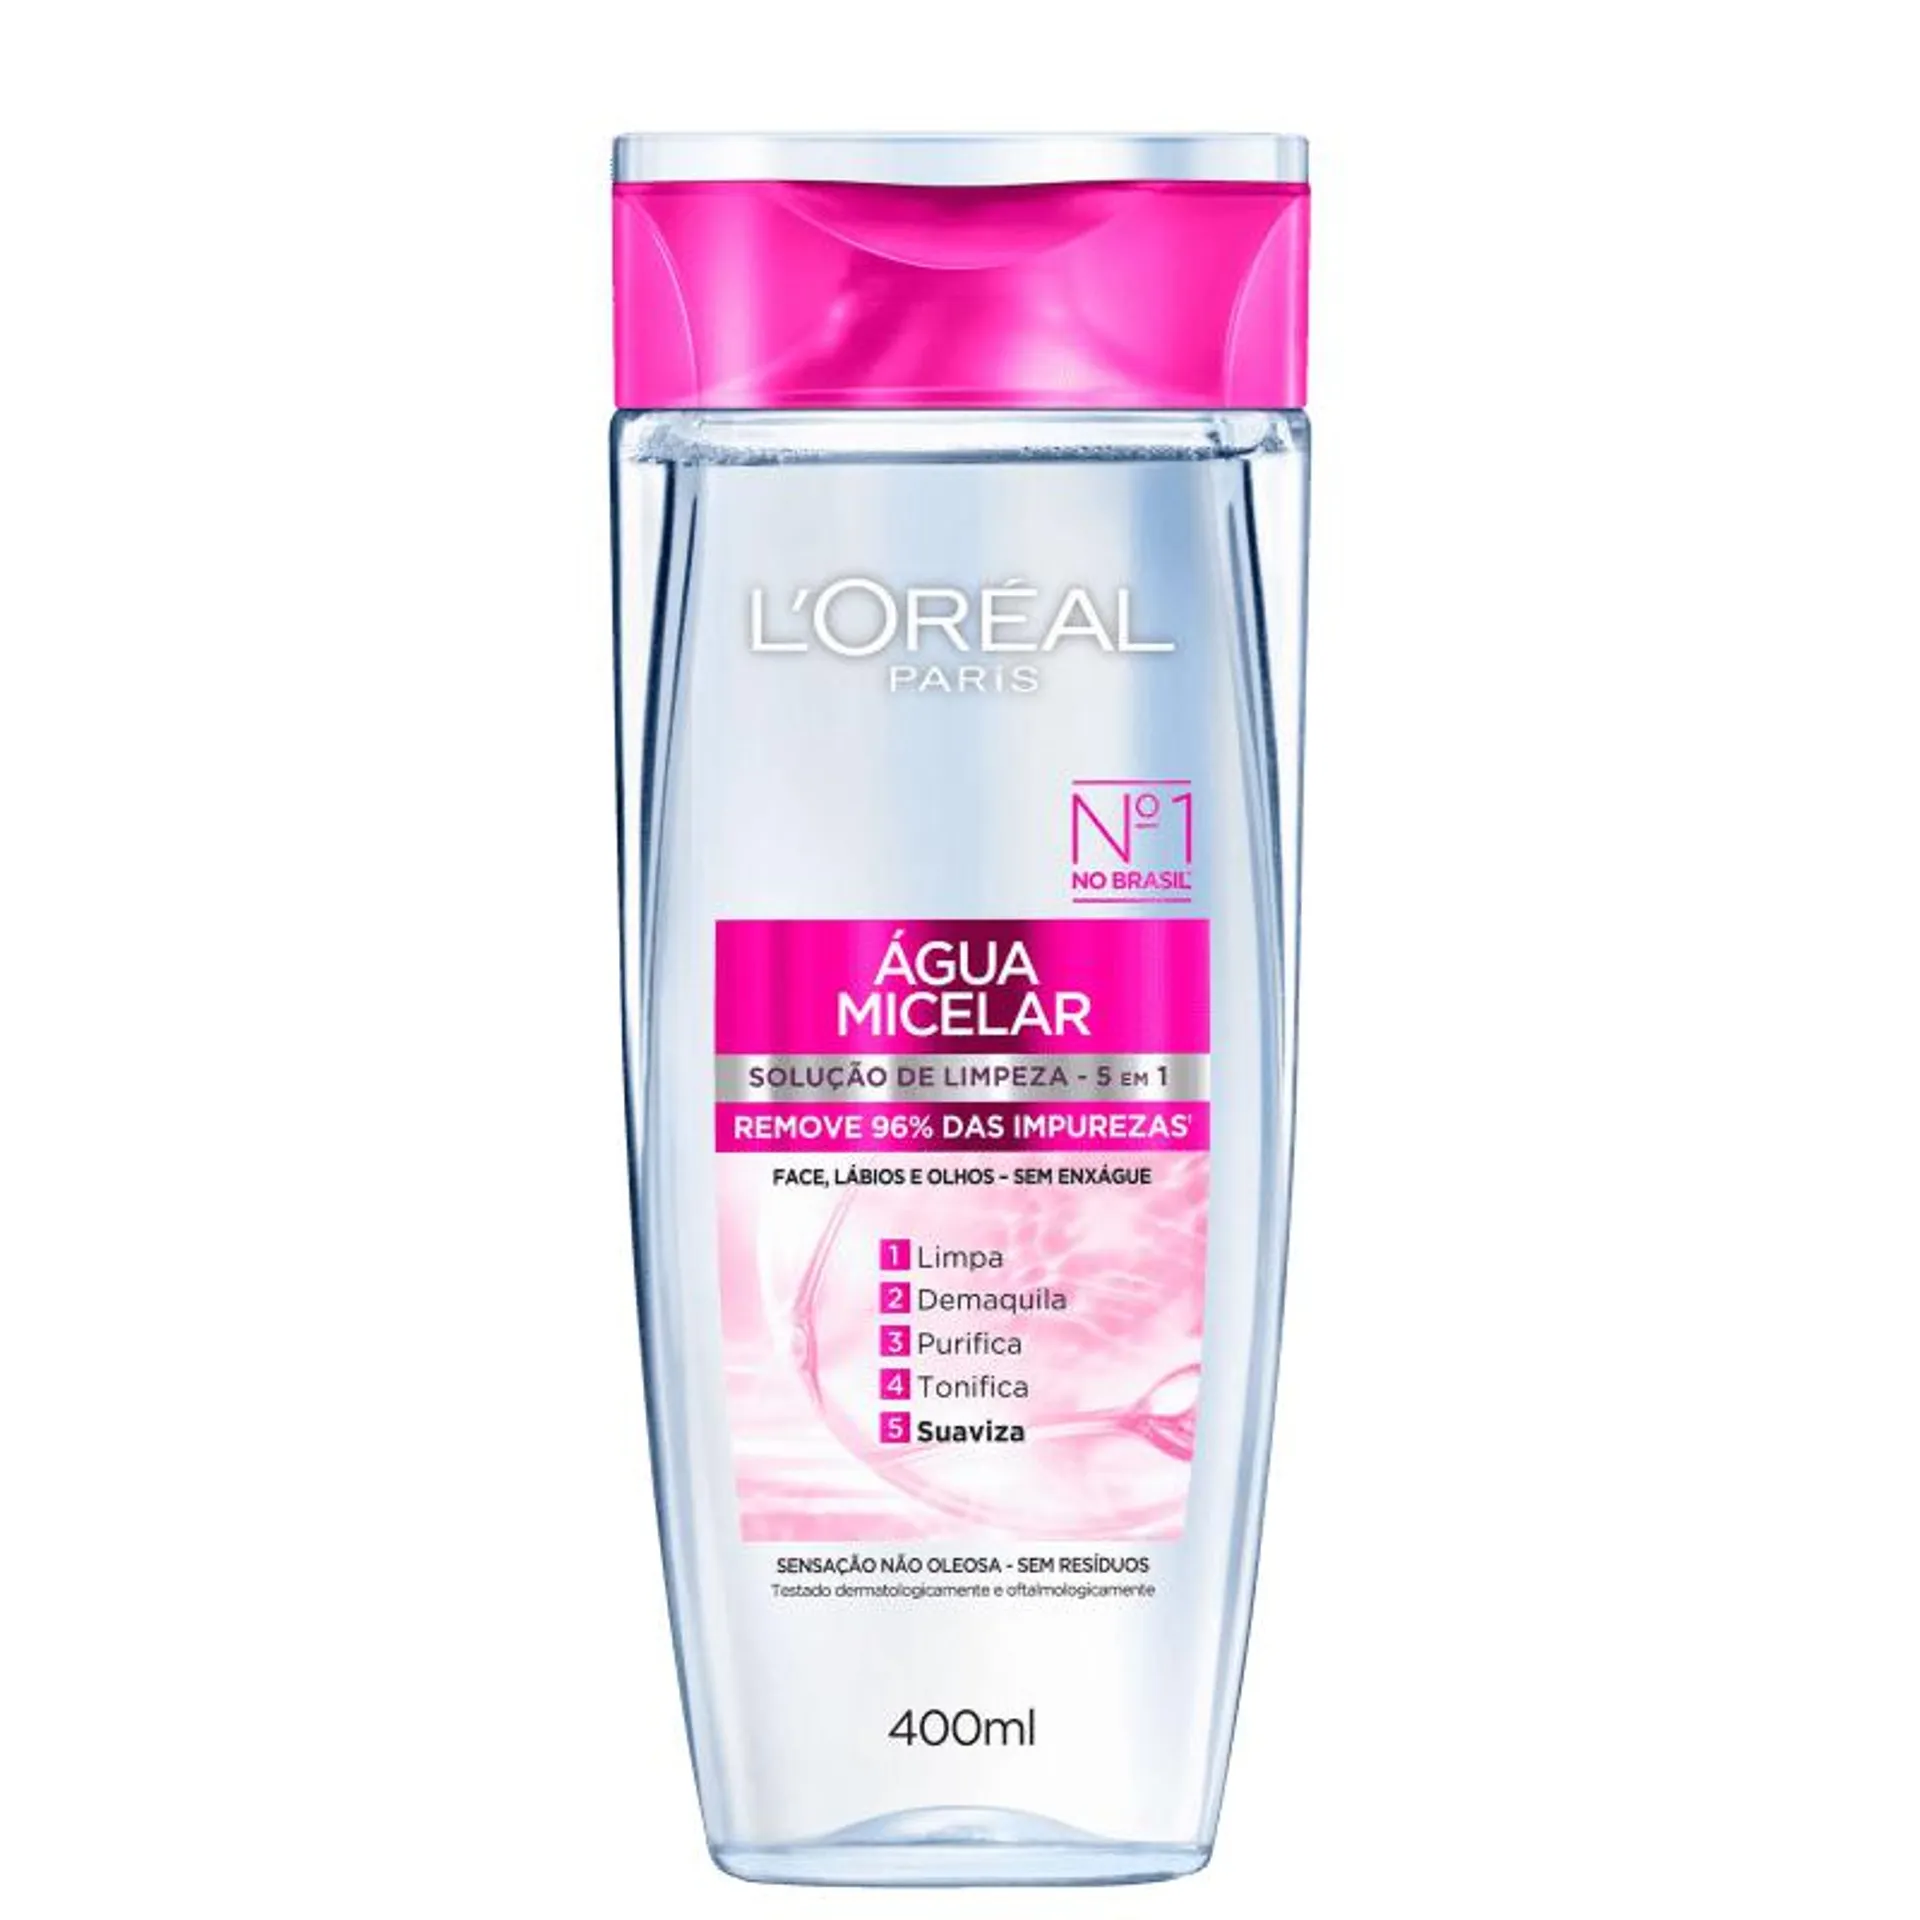 L'Oréal Paris Dermo Expertise Solução de Limpeza 5 em 1 - Água Micelar 400ml